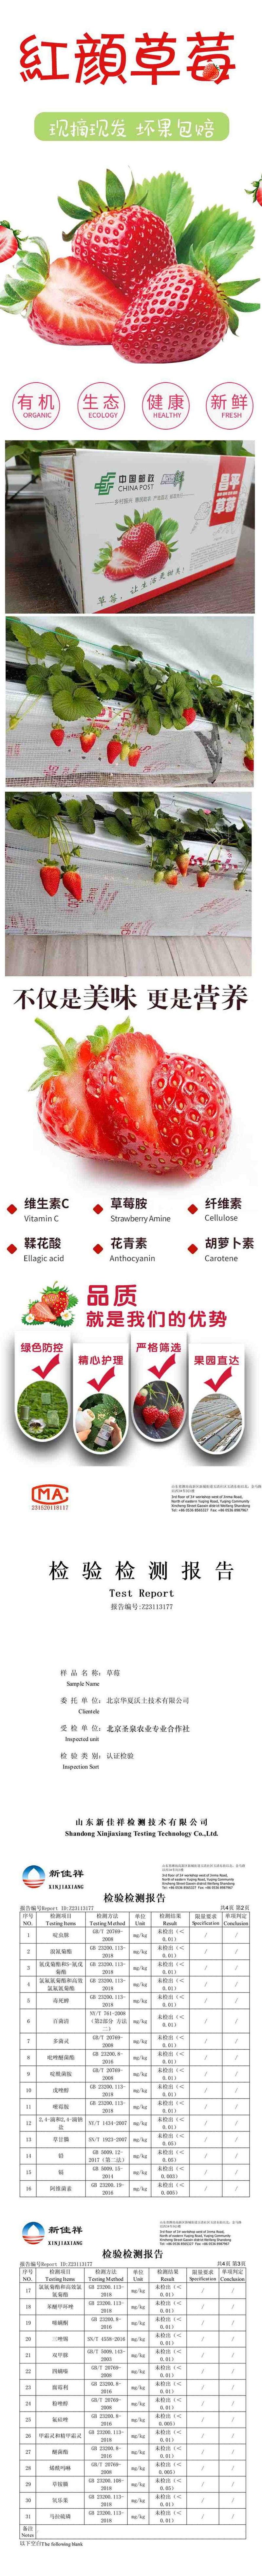 邮政农品 【北京优农】昌平红颜草莓